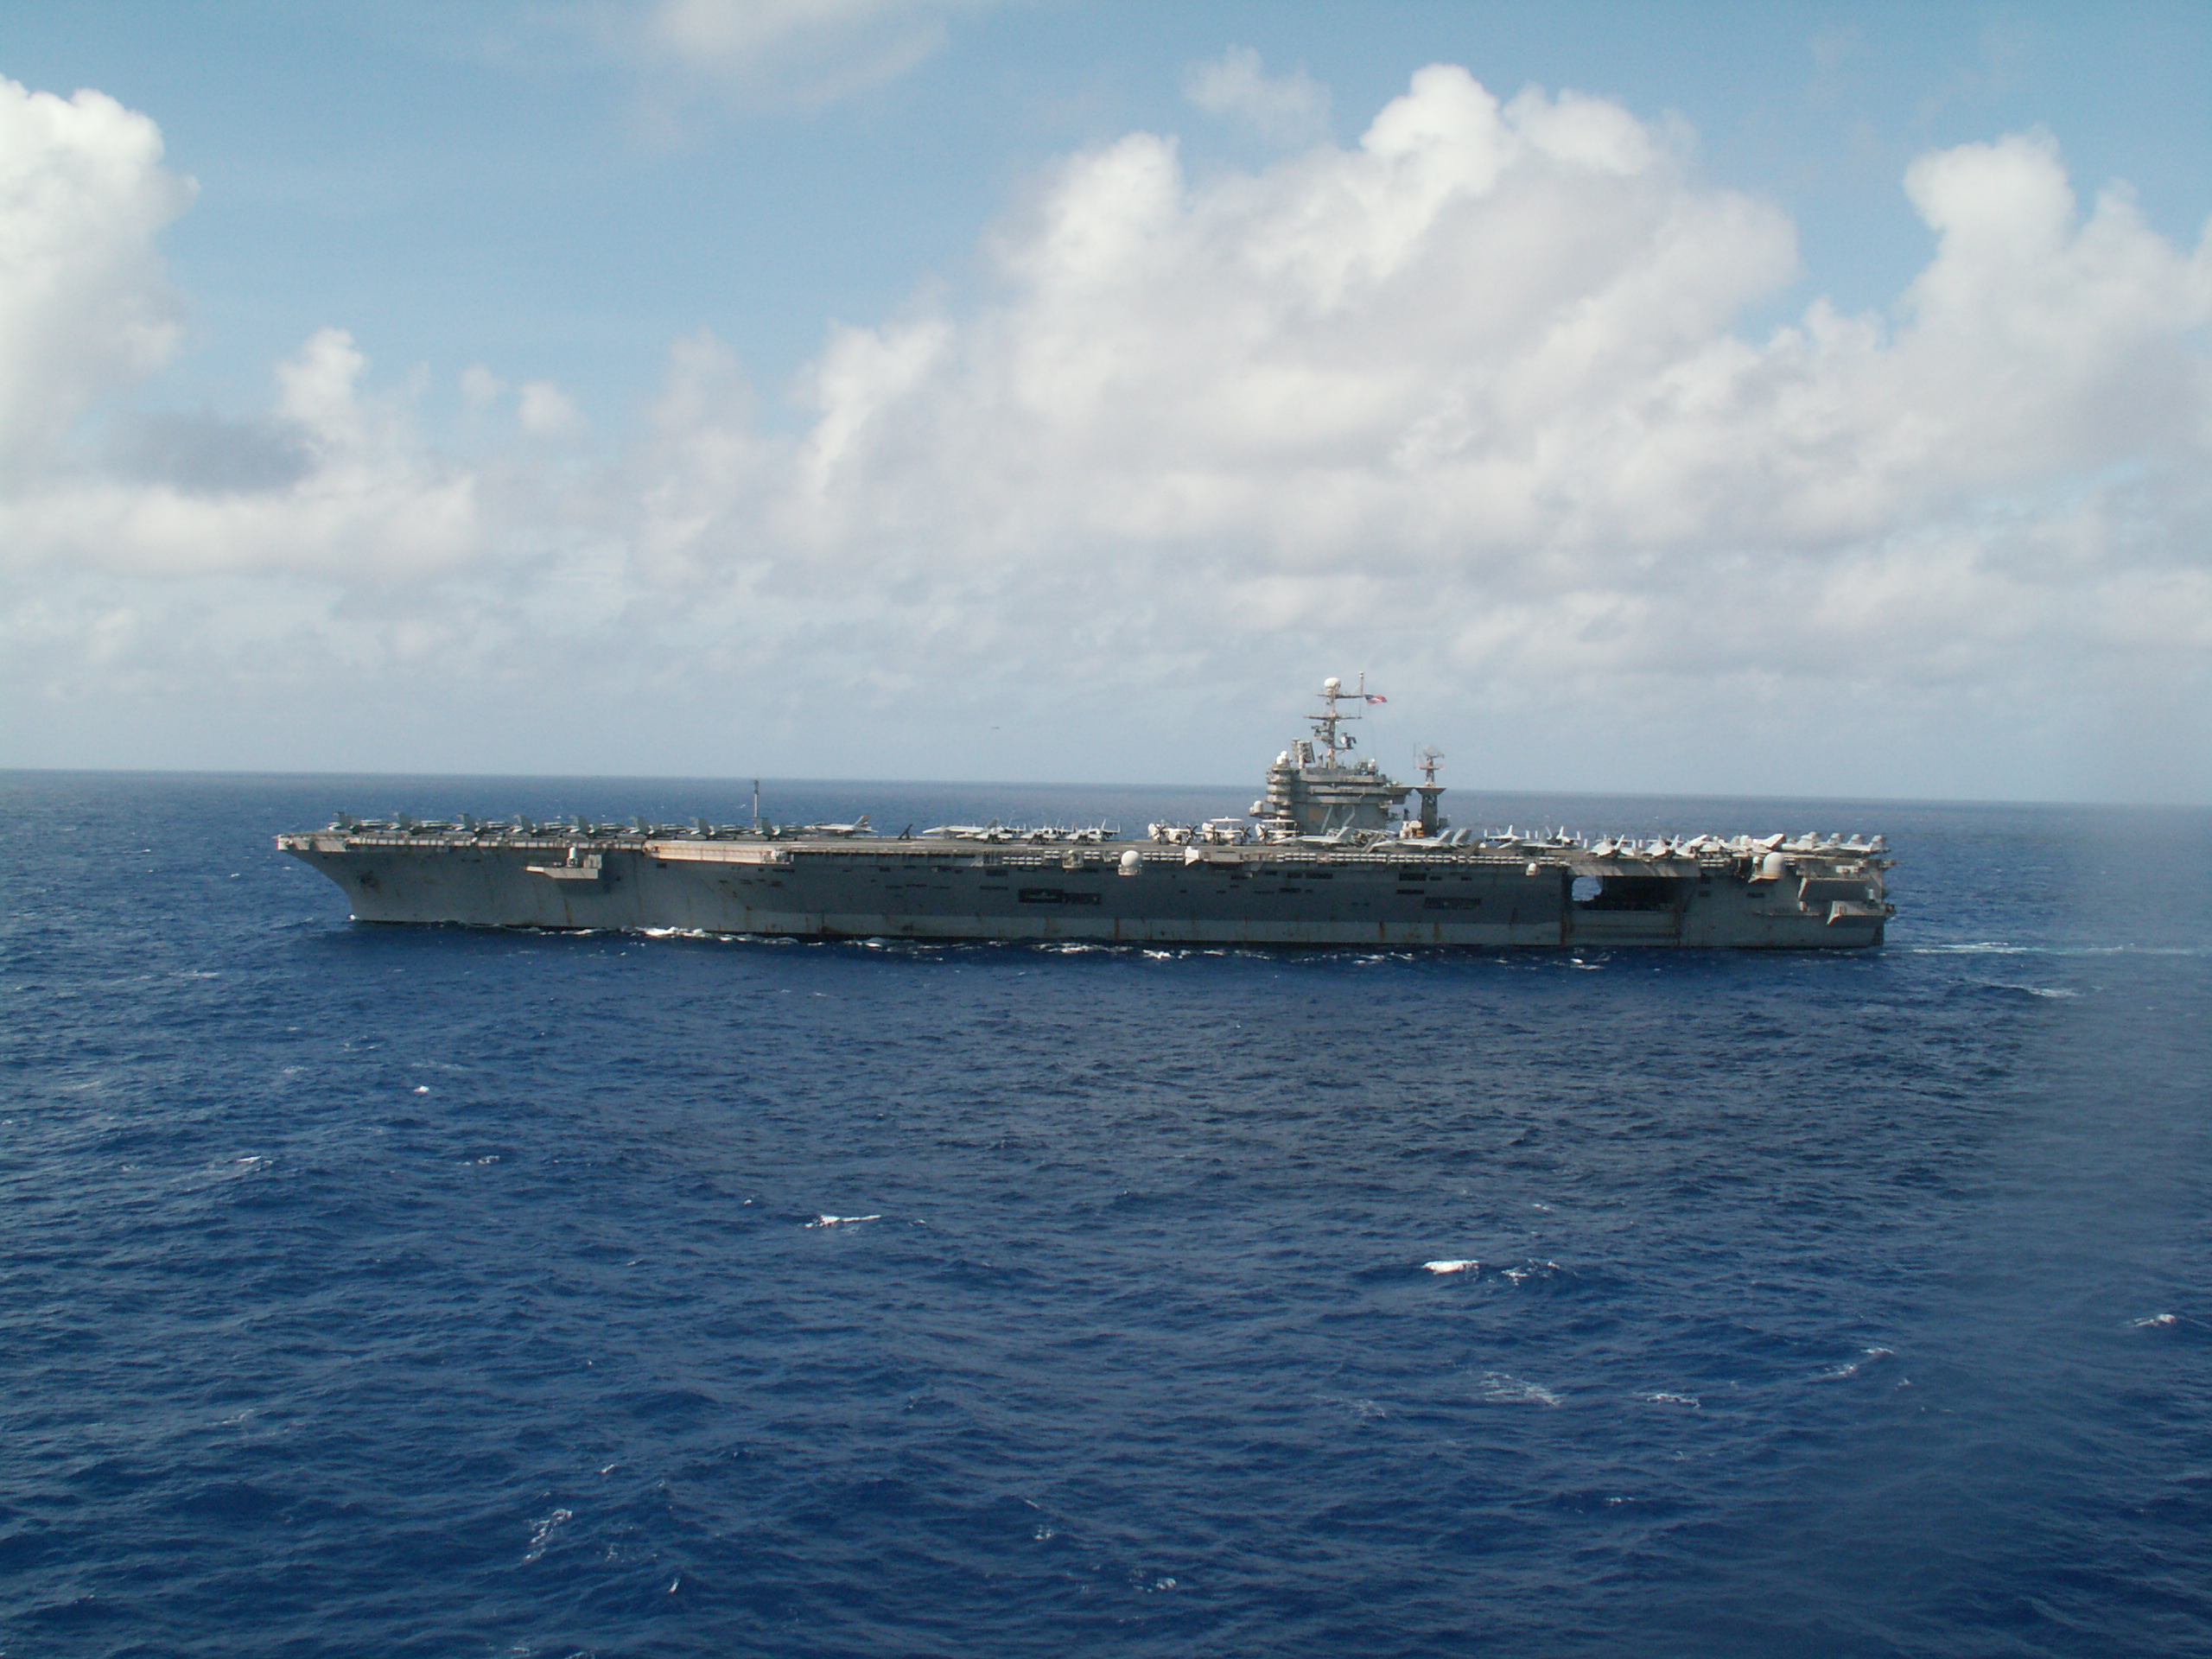 корабли, военно-морской флот, транспортные средства, авианосцы, CVN - 72, USS Abraham Lincoln - обои на рабочий стол